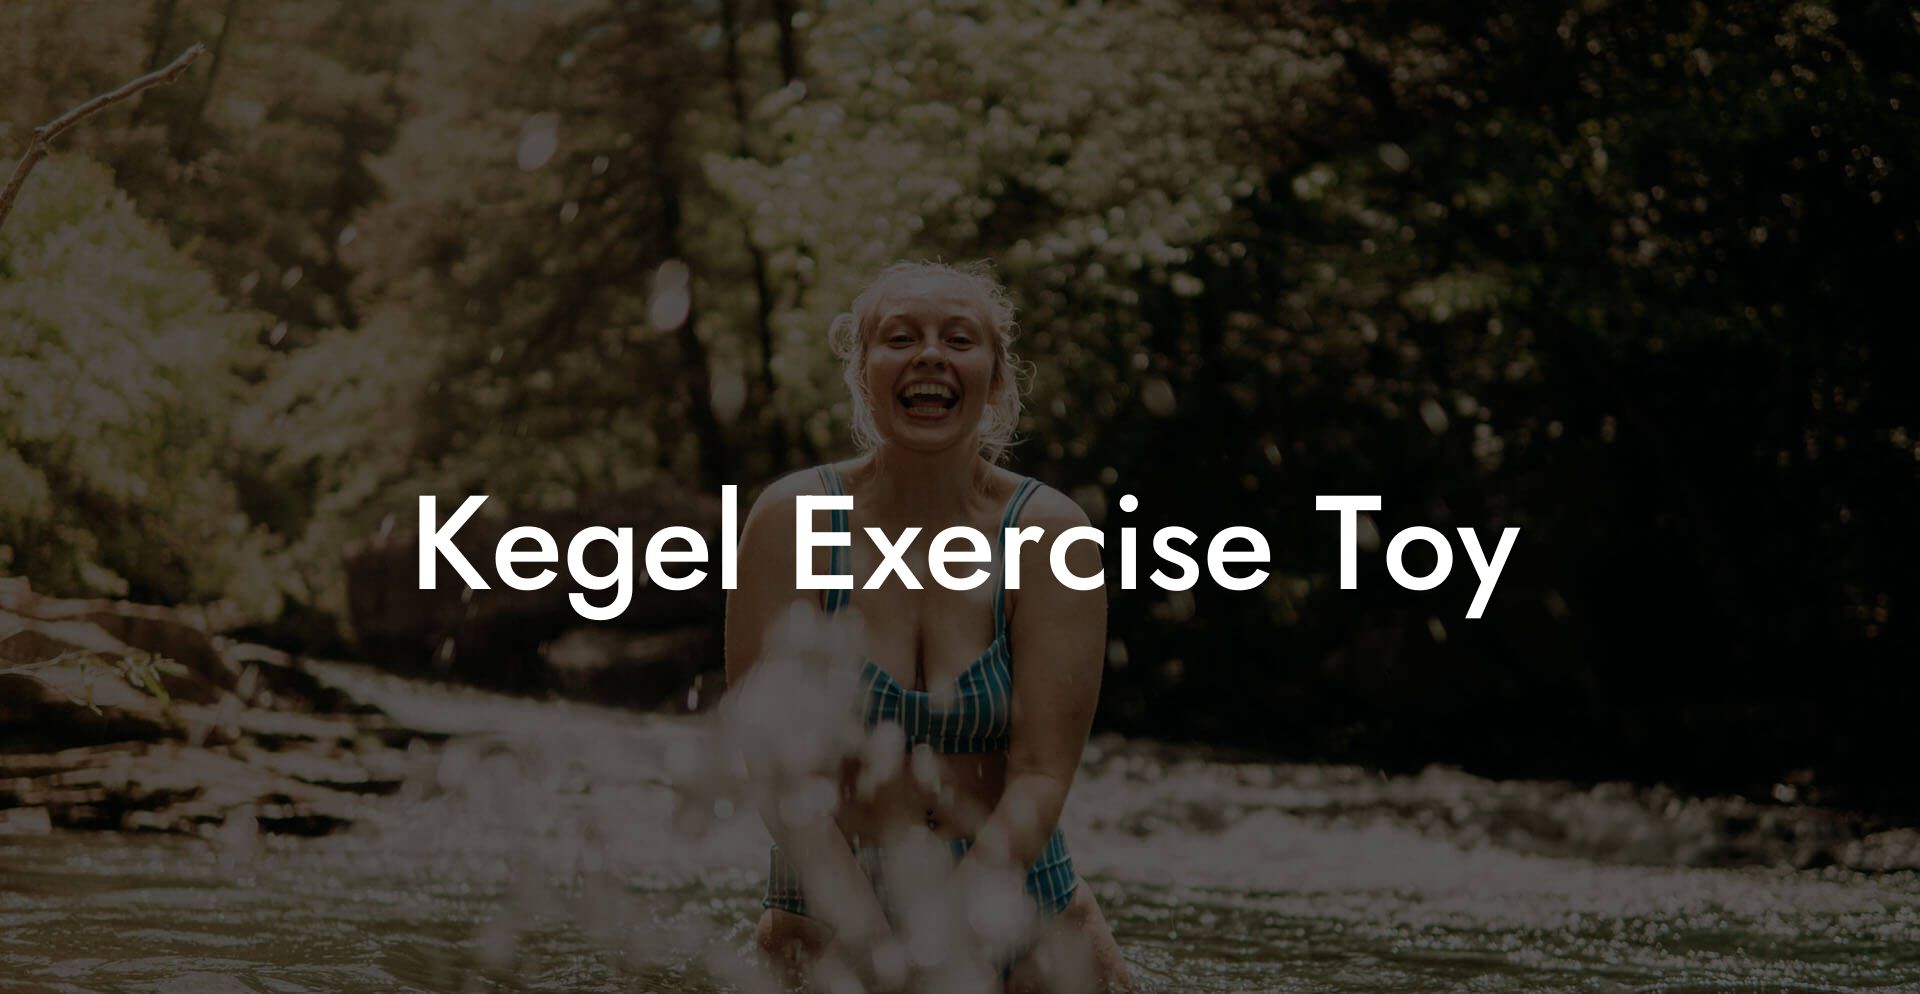 Kegel Exercise Toy